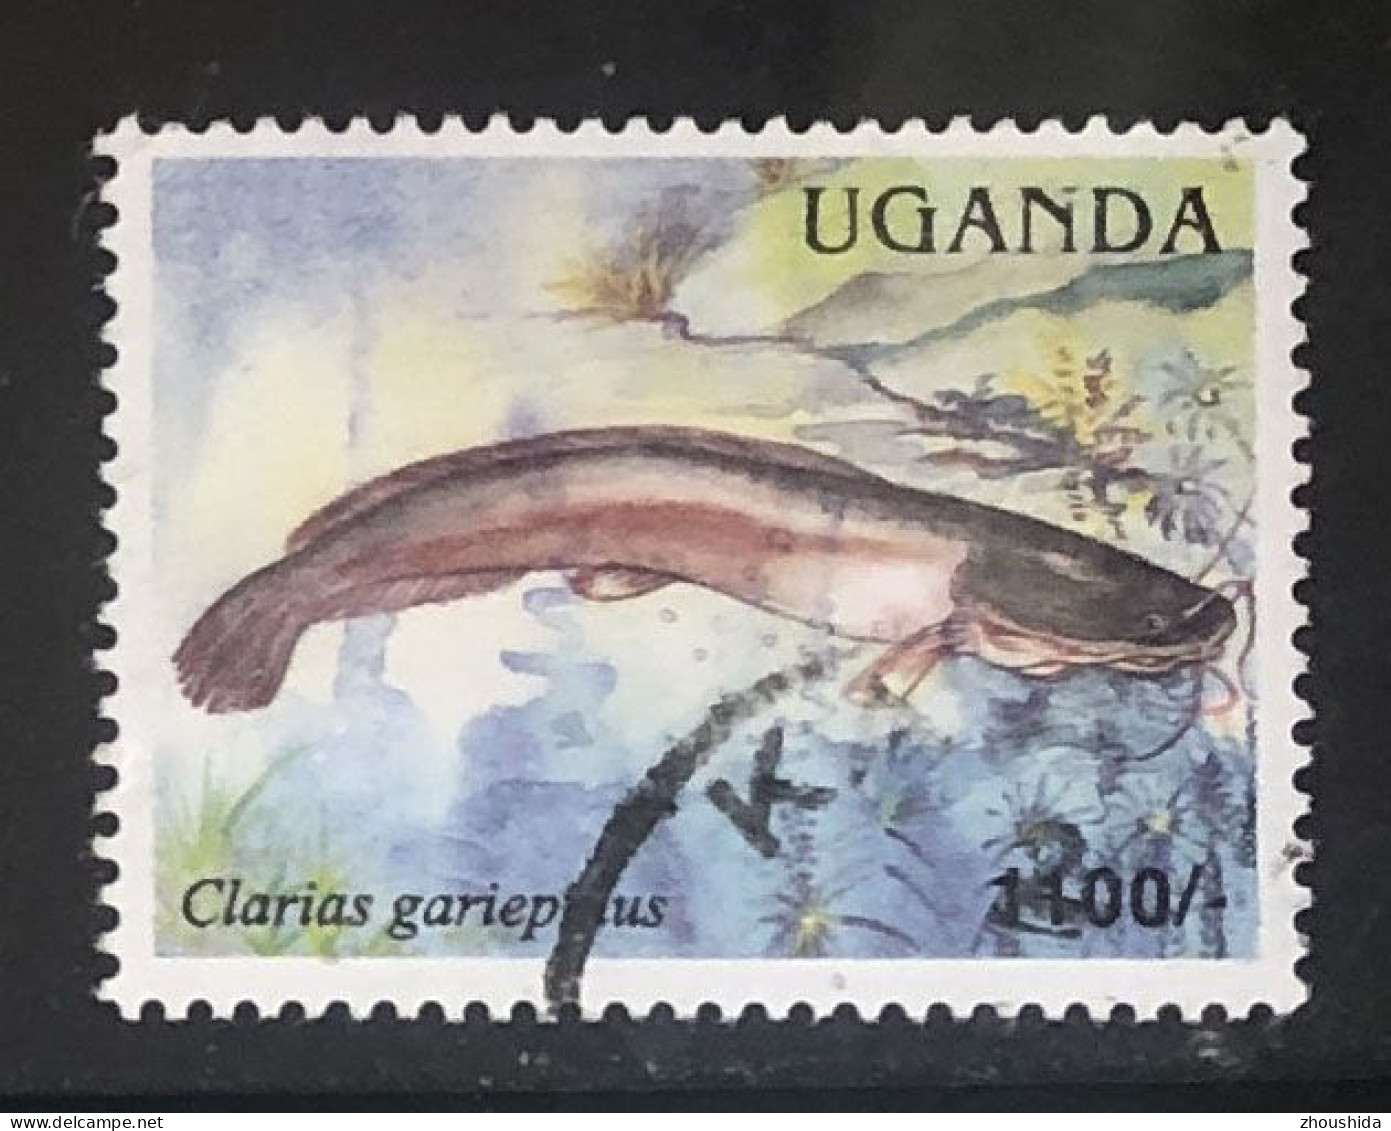 Uganda Fish 1100sh Fine Used - Ouganda (1962-...)